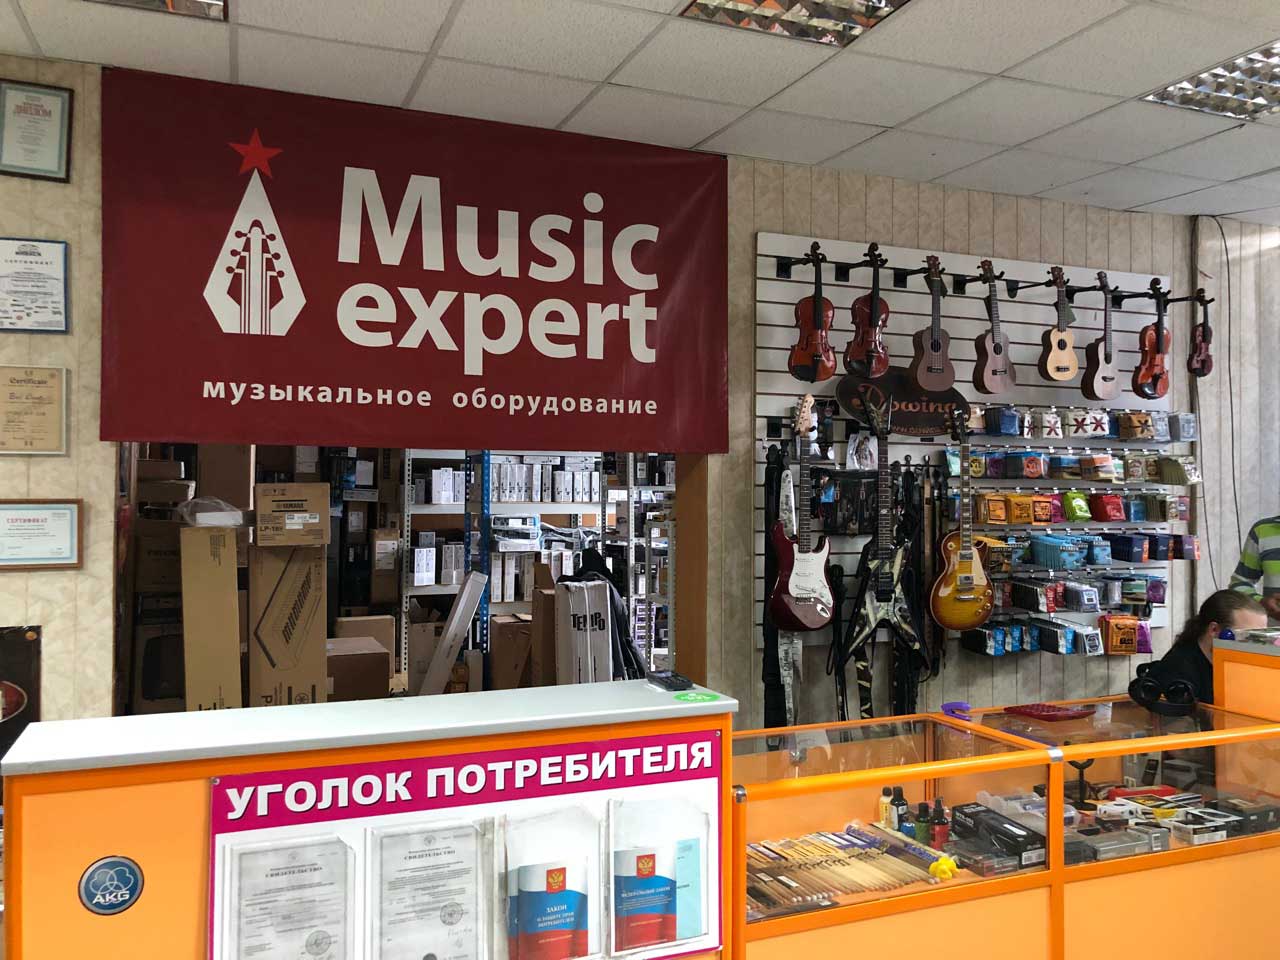 Music-Expert – крупный отраслевой ритейлер, который специализируется на продаже звукового, светового и кинооборудования, музыкальных инструментов и аксессуаров